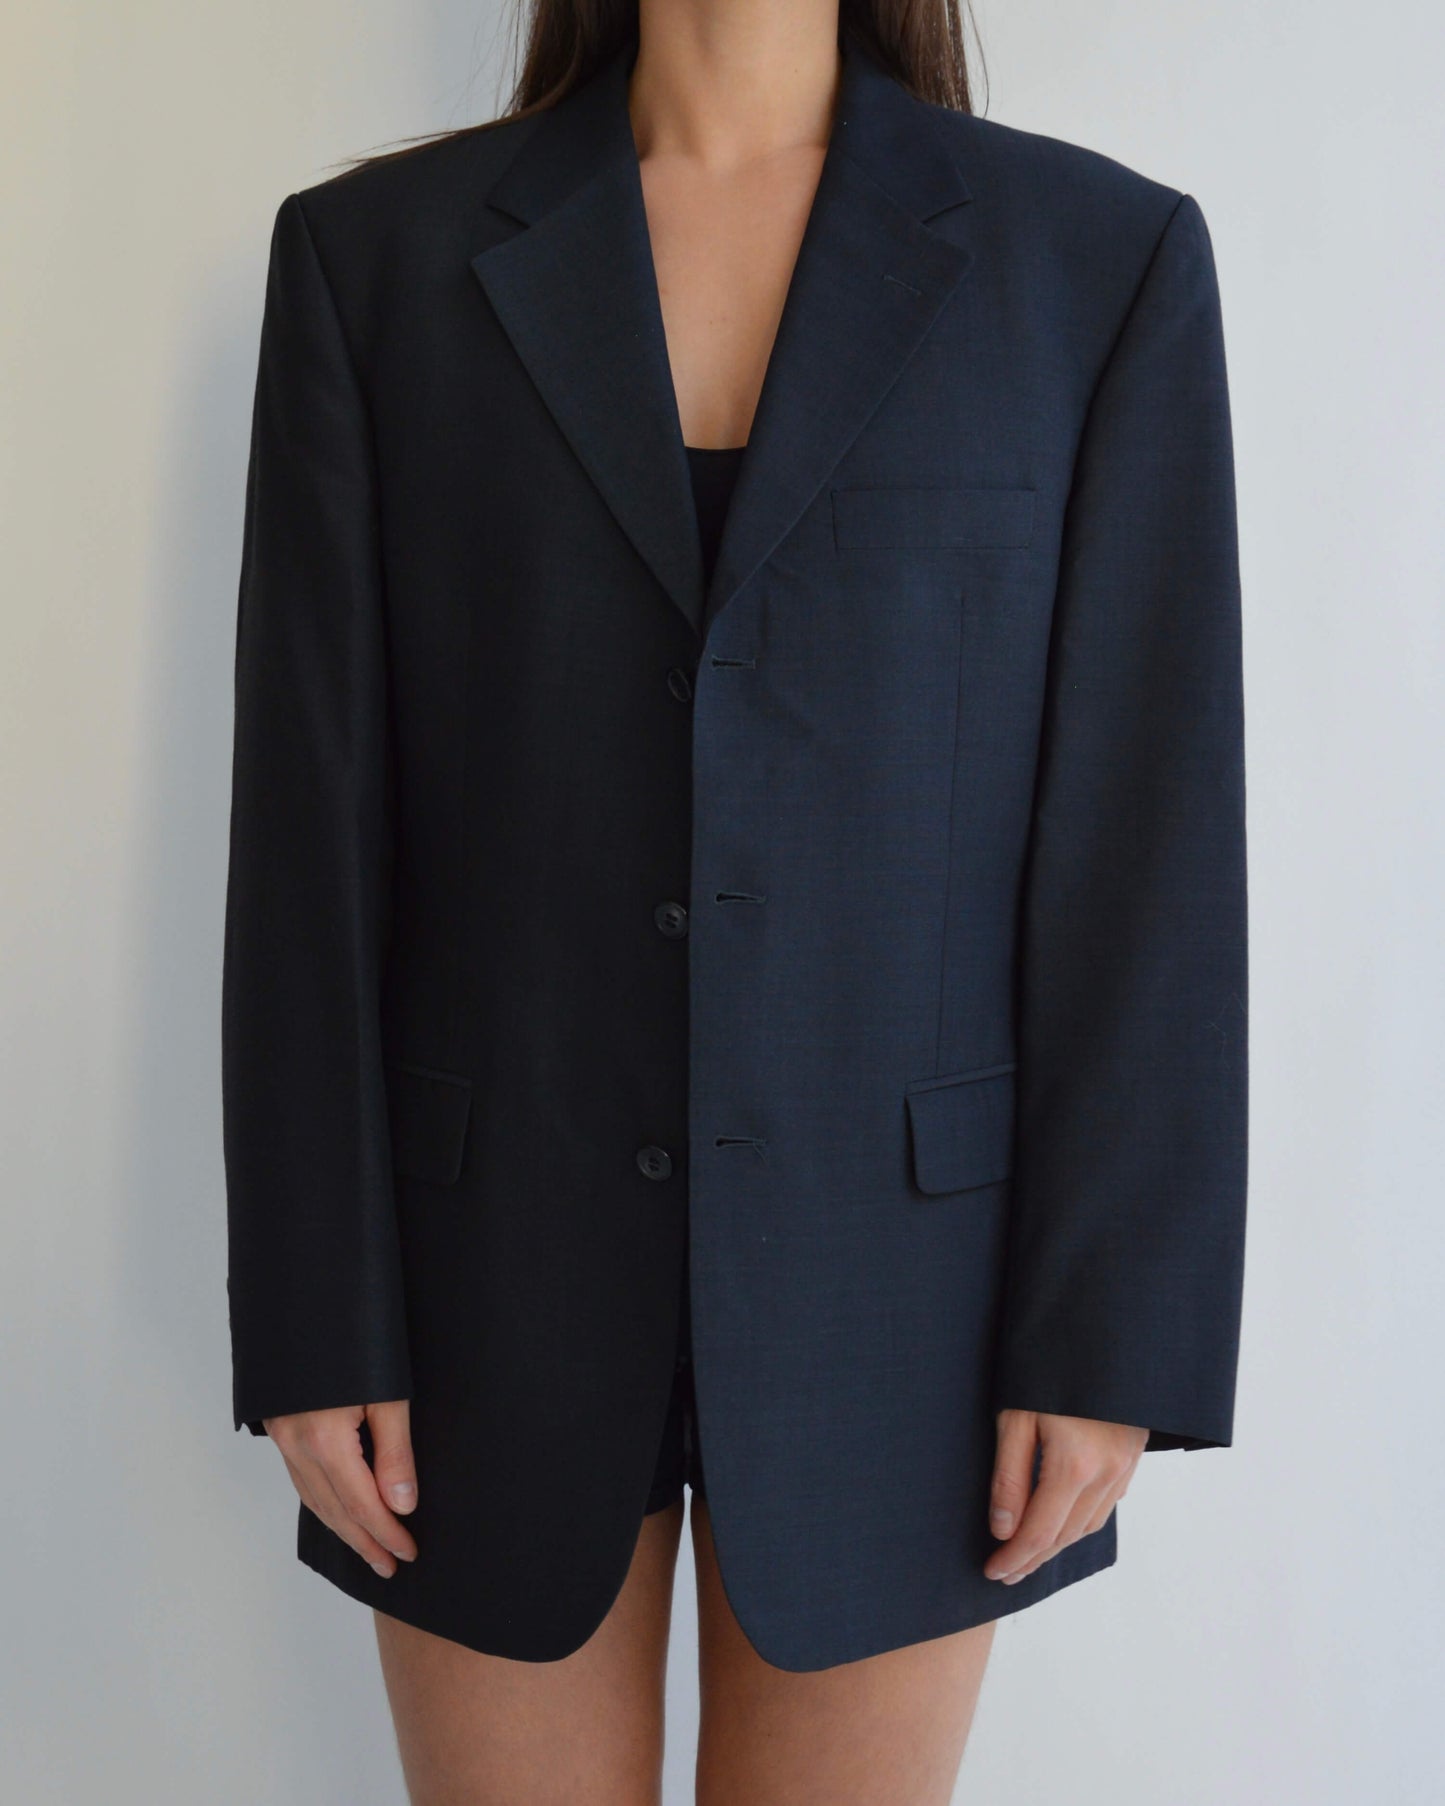 Jacket - Perfect Black Blazer (S/L)